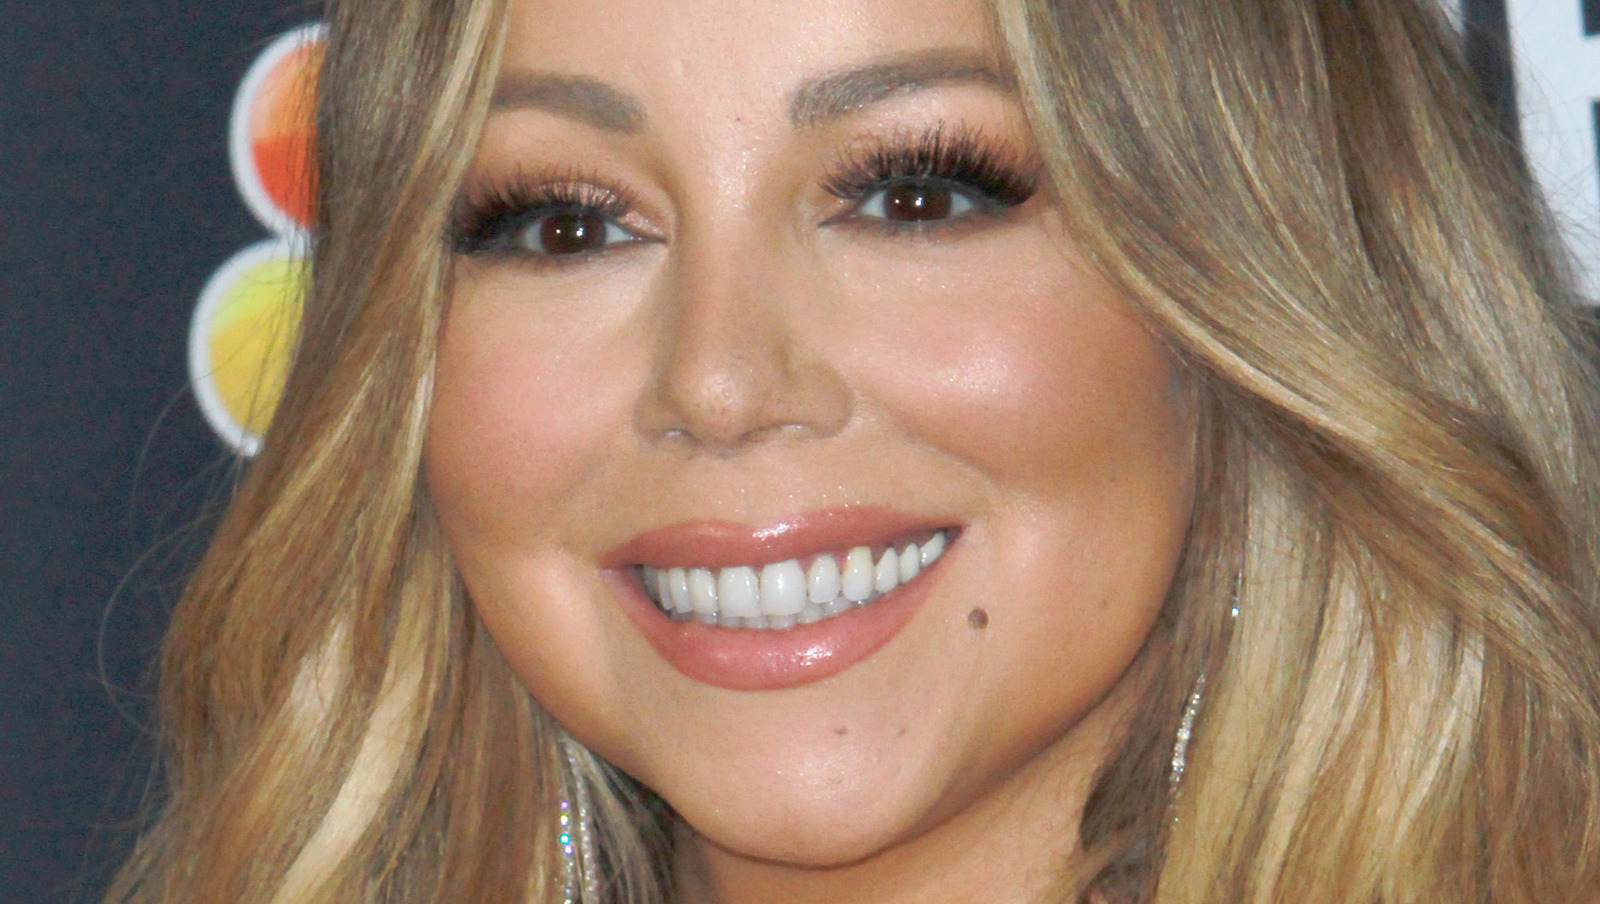 Nip Slip Again! Mariah Carey's Boobs Pop Out of Her Risque Black